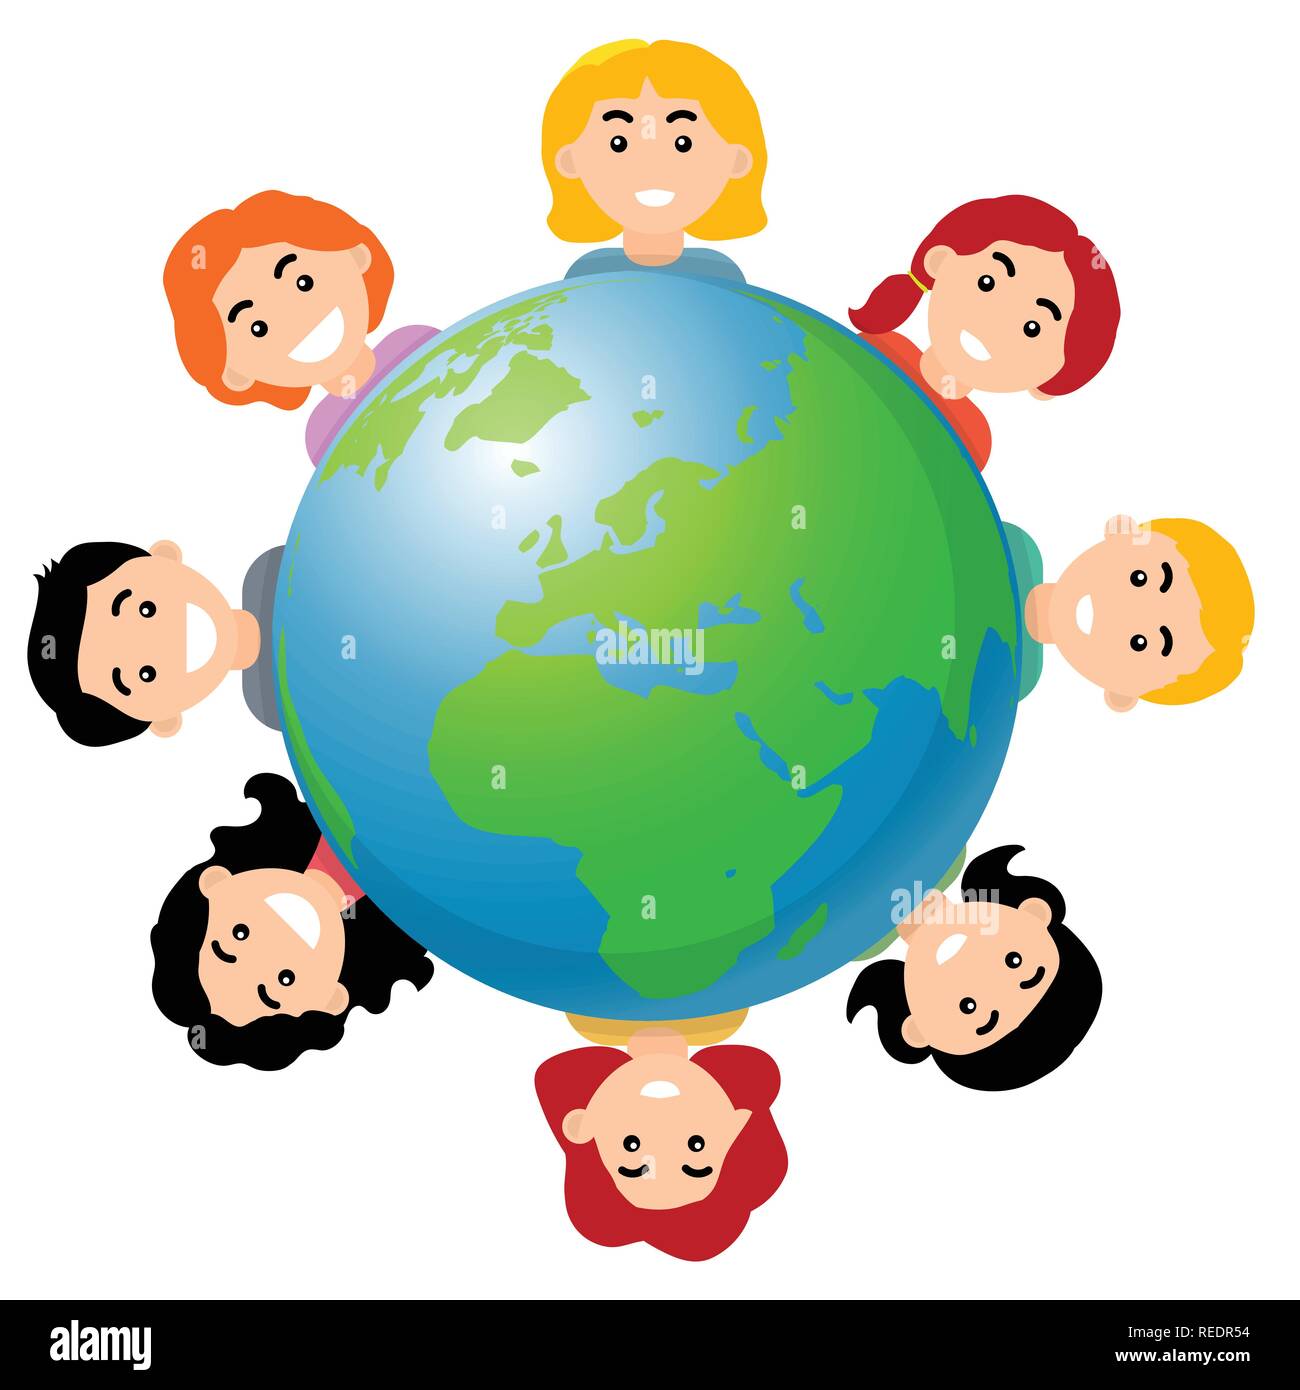 Los niños de todo el mundo, la sonrisa de los niños y el mundo, estilo plano de dibujos animados - ilustración vectorial Ilustración del Vector